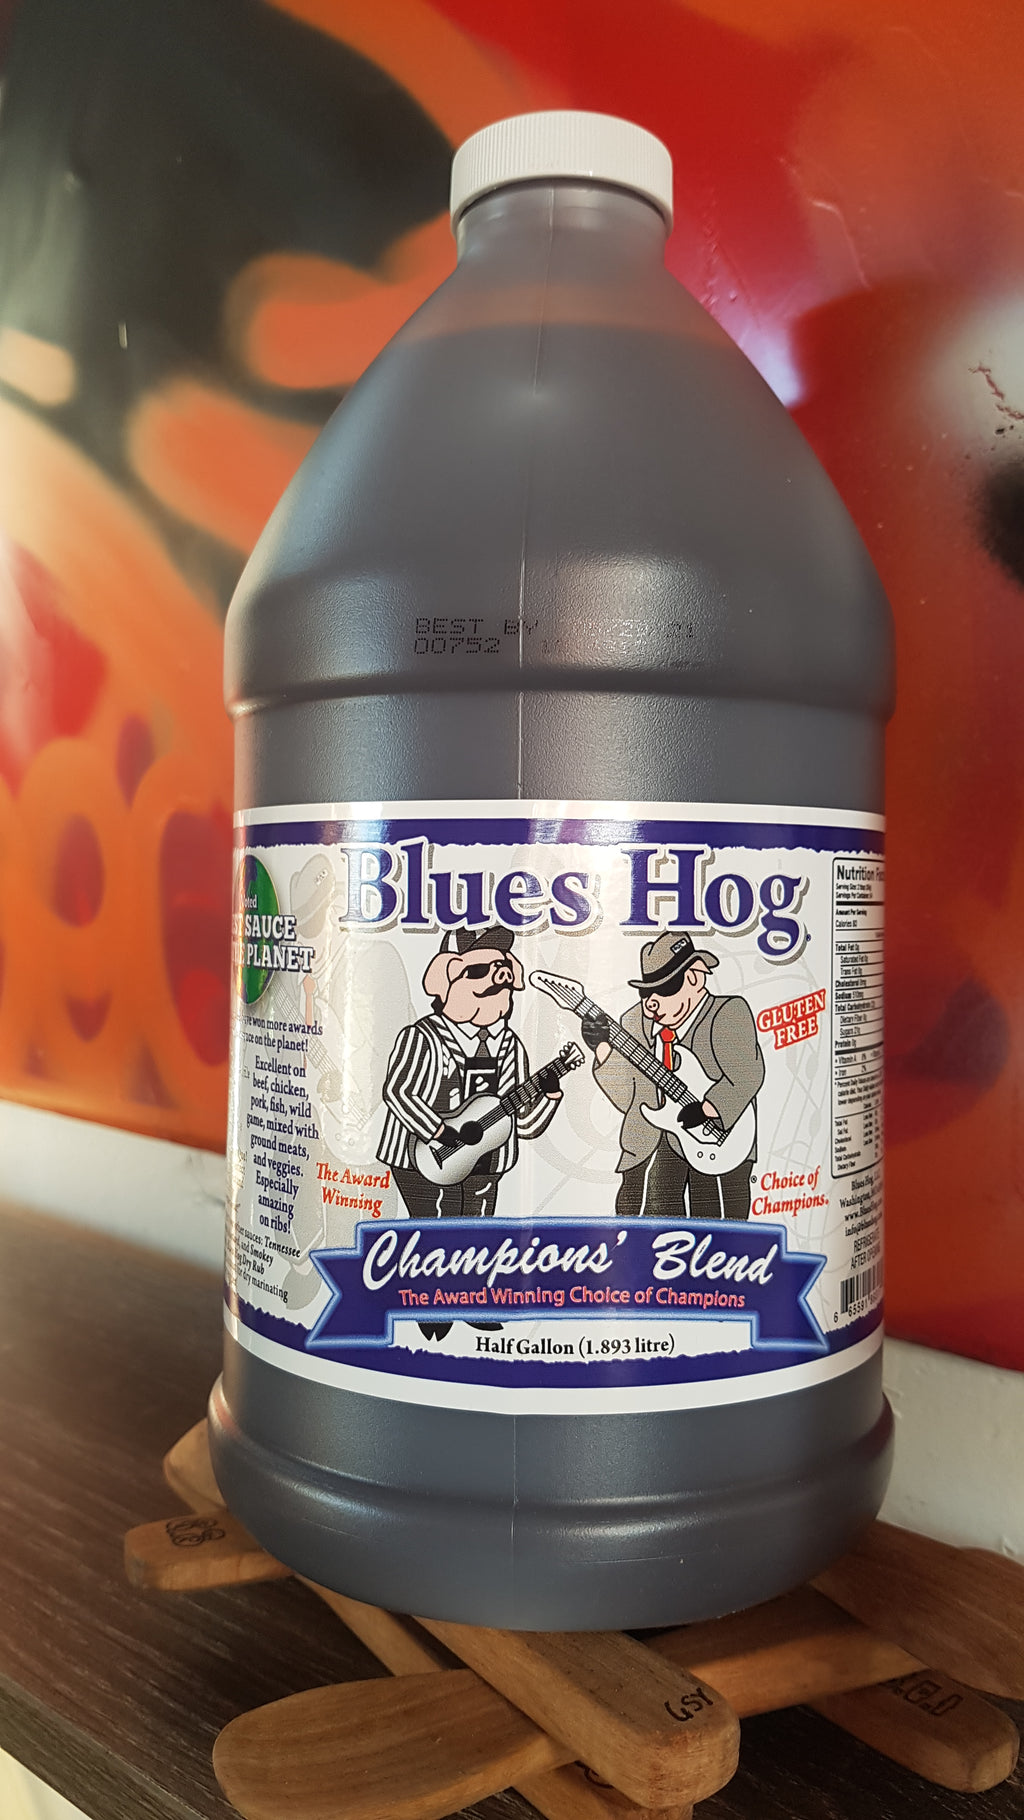 Champions Blend  Bbq Sauce by Blues Hog